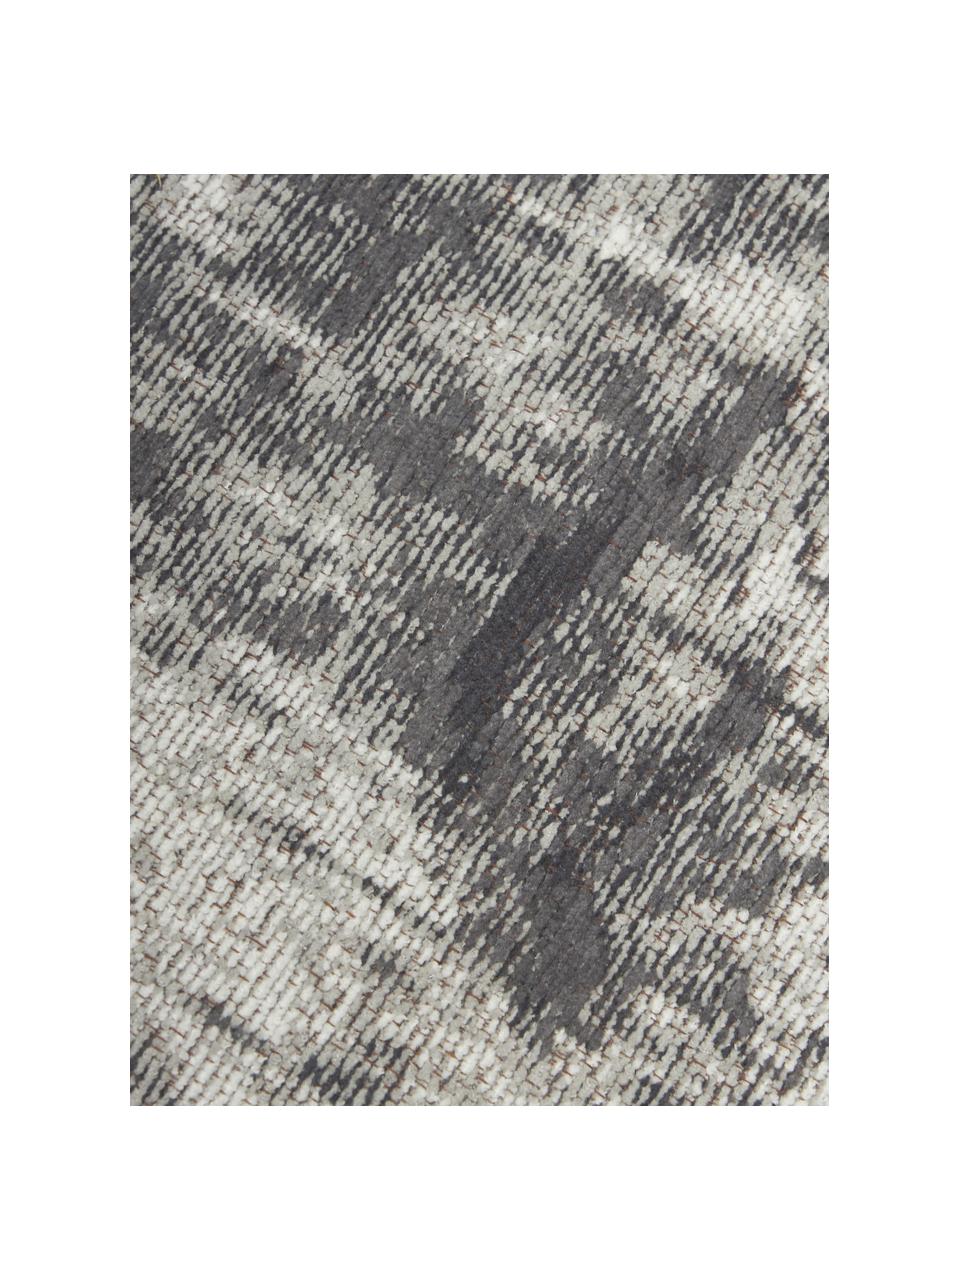 Ručne tkaný bavlnený behúň vo vintage štýle Luise, Sivé a biele tóny, Š 80 x D 250 cm